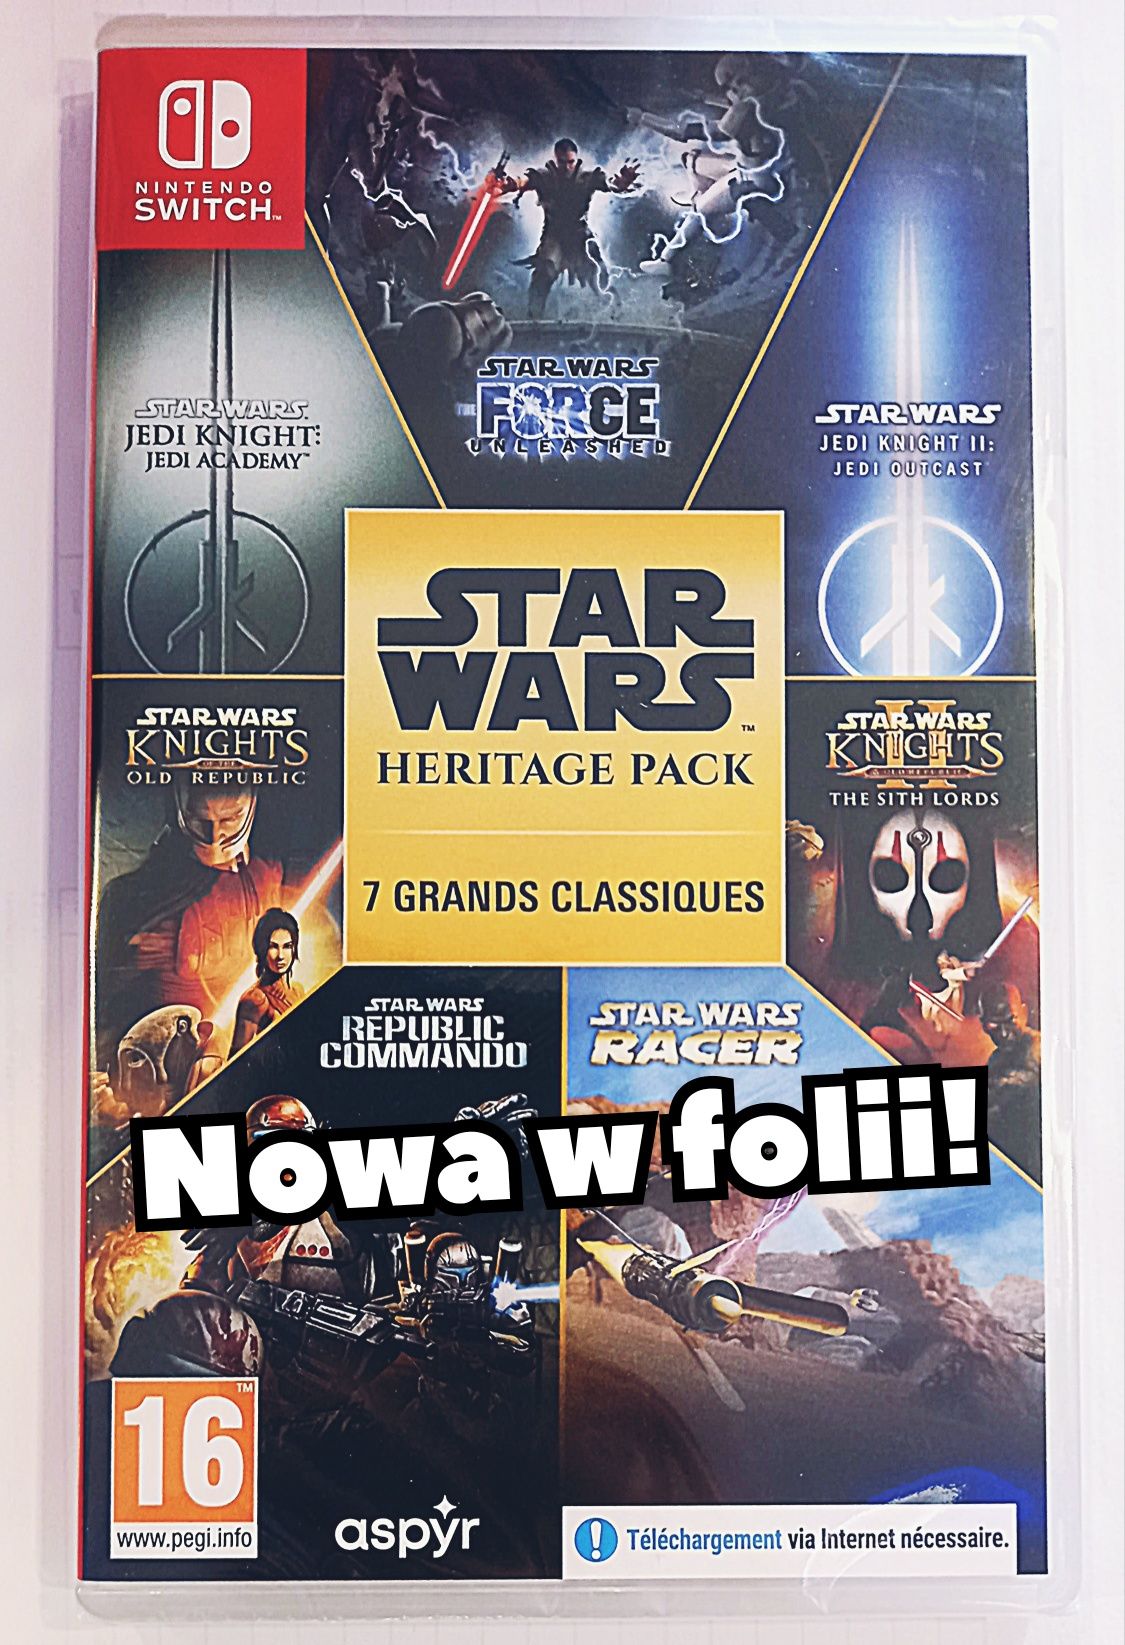 Star Wars Heritage Pack na Nintendo Switch /Nowa w folii! s. Chorzów